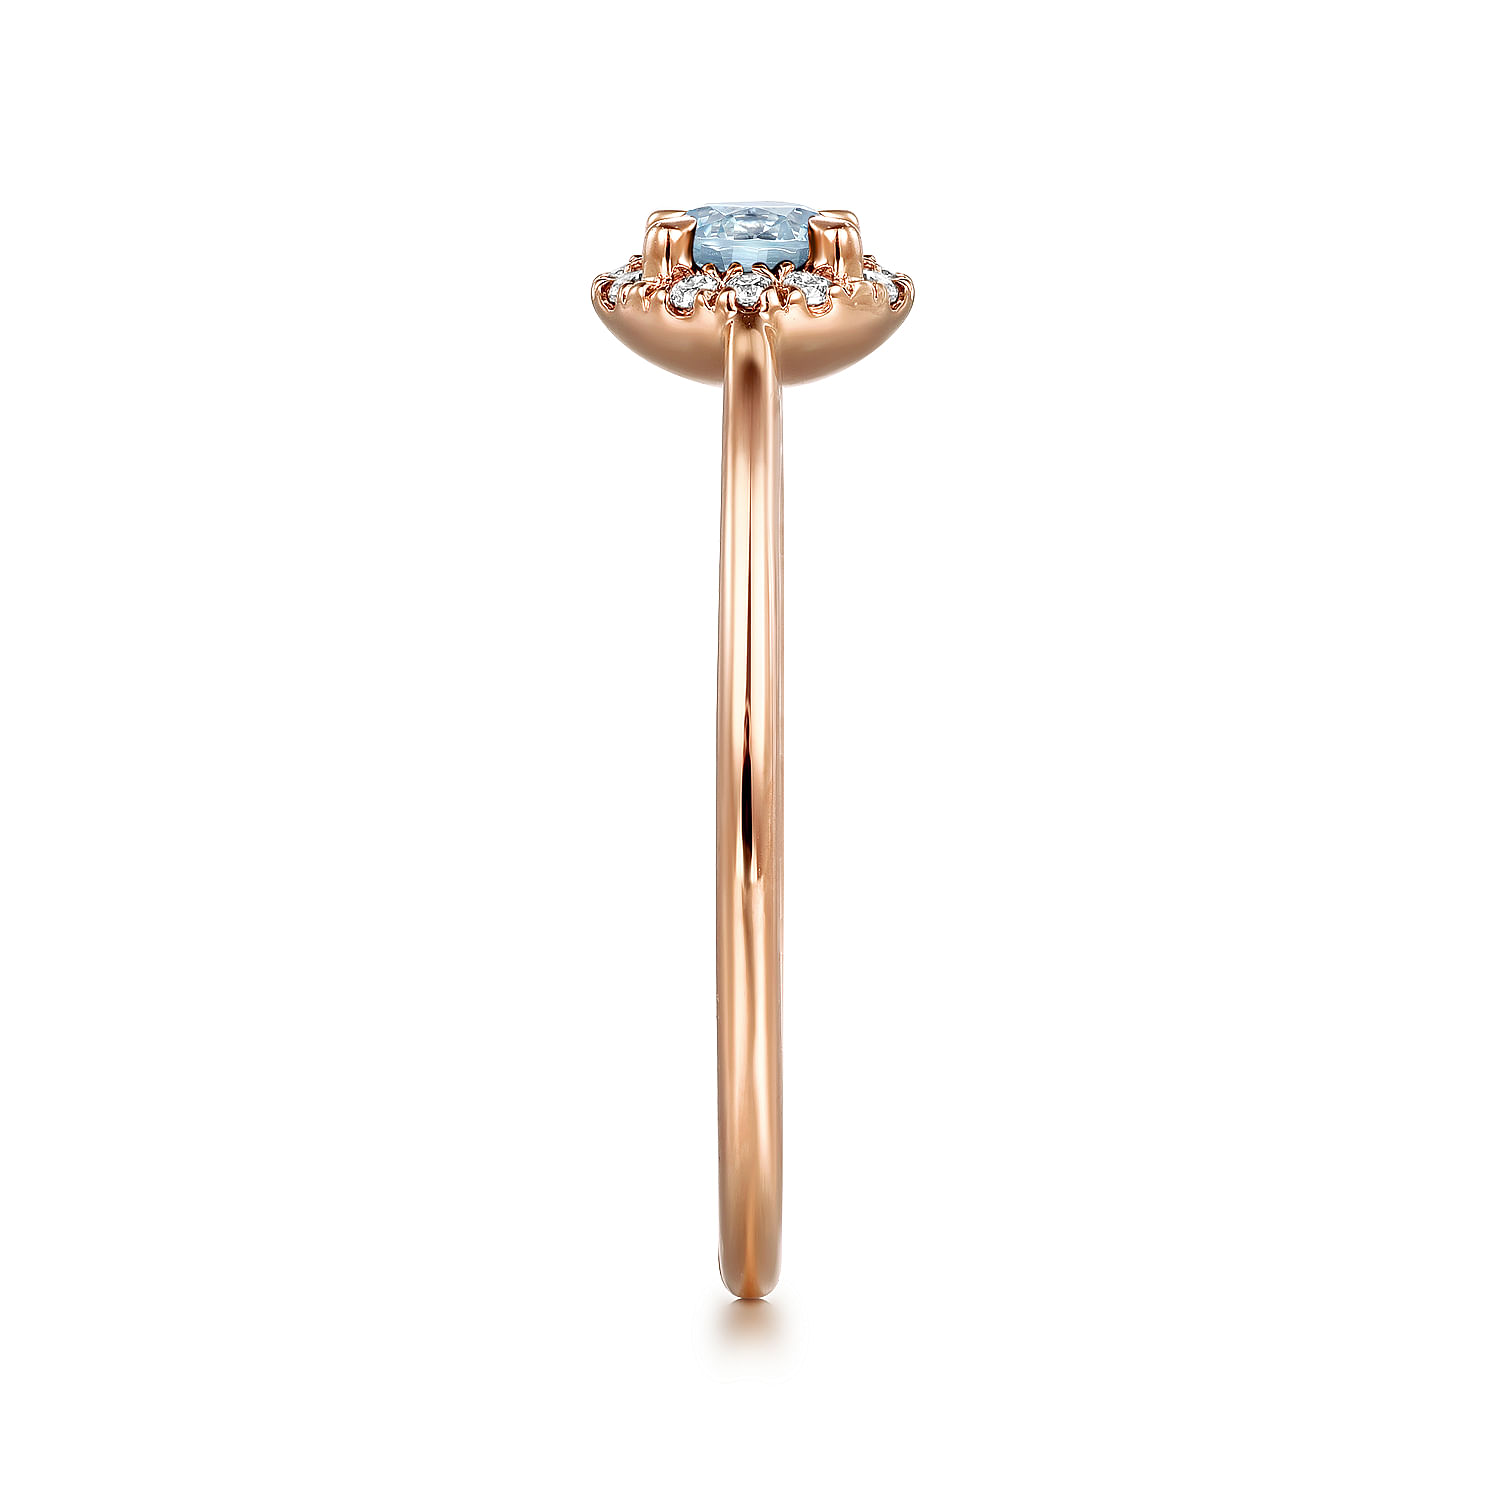 14K Rose Gold Aquamarine and Diamond Halo Promise Ring